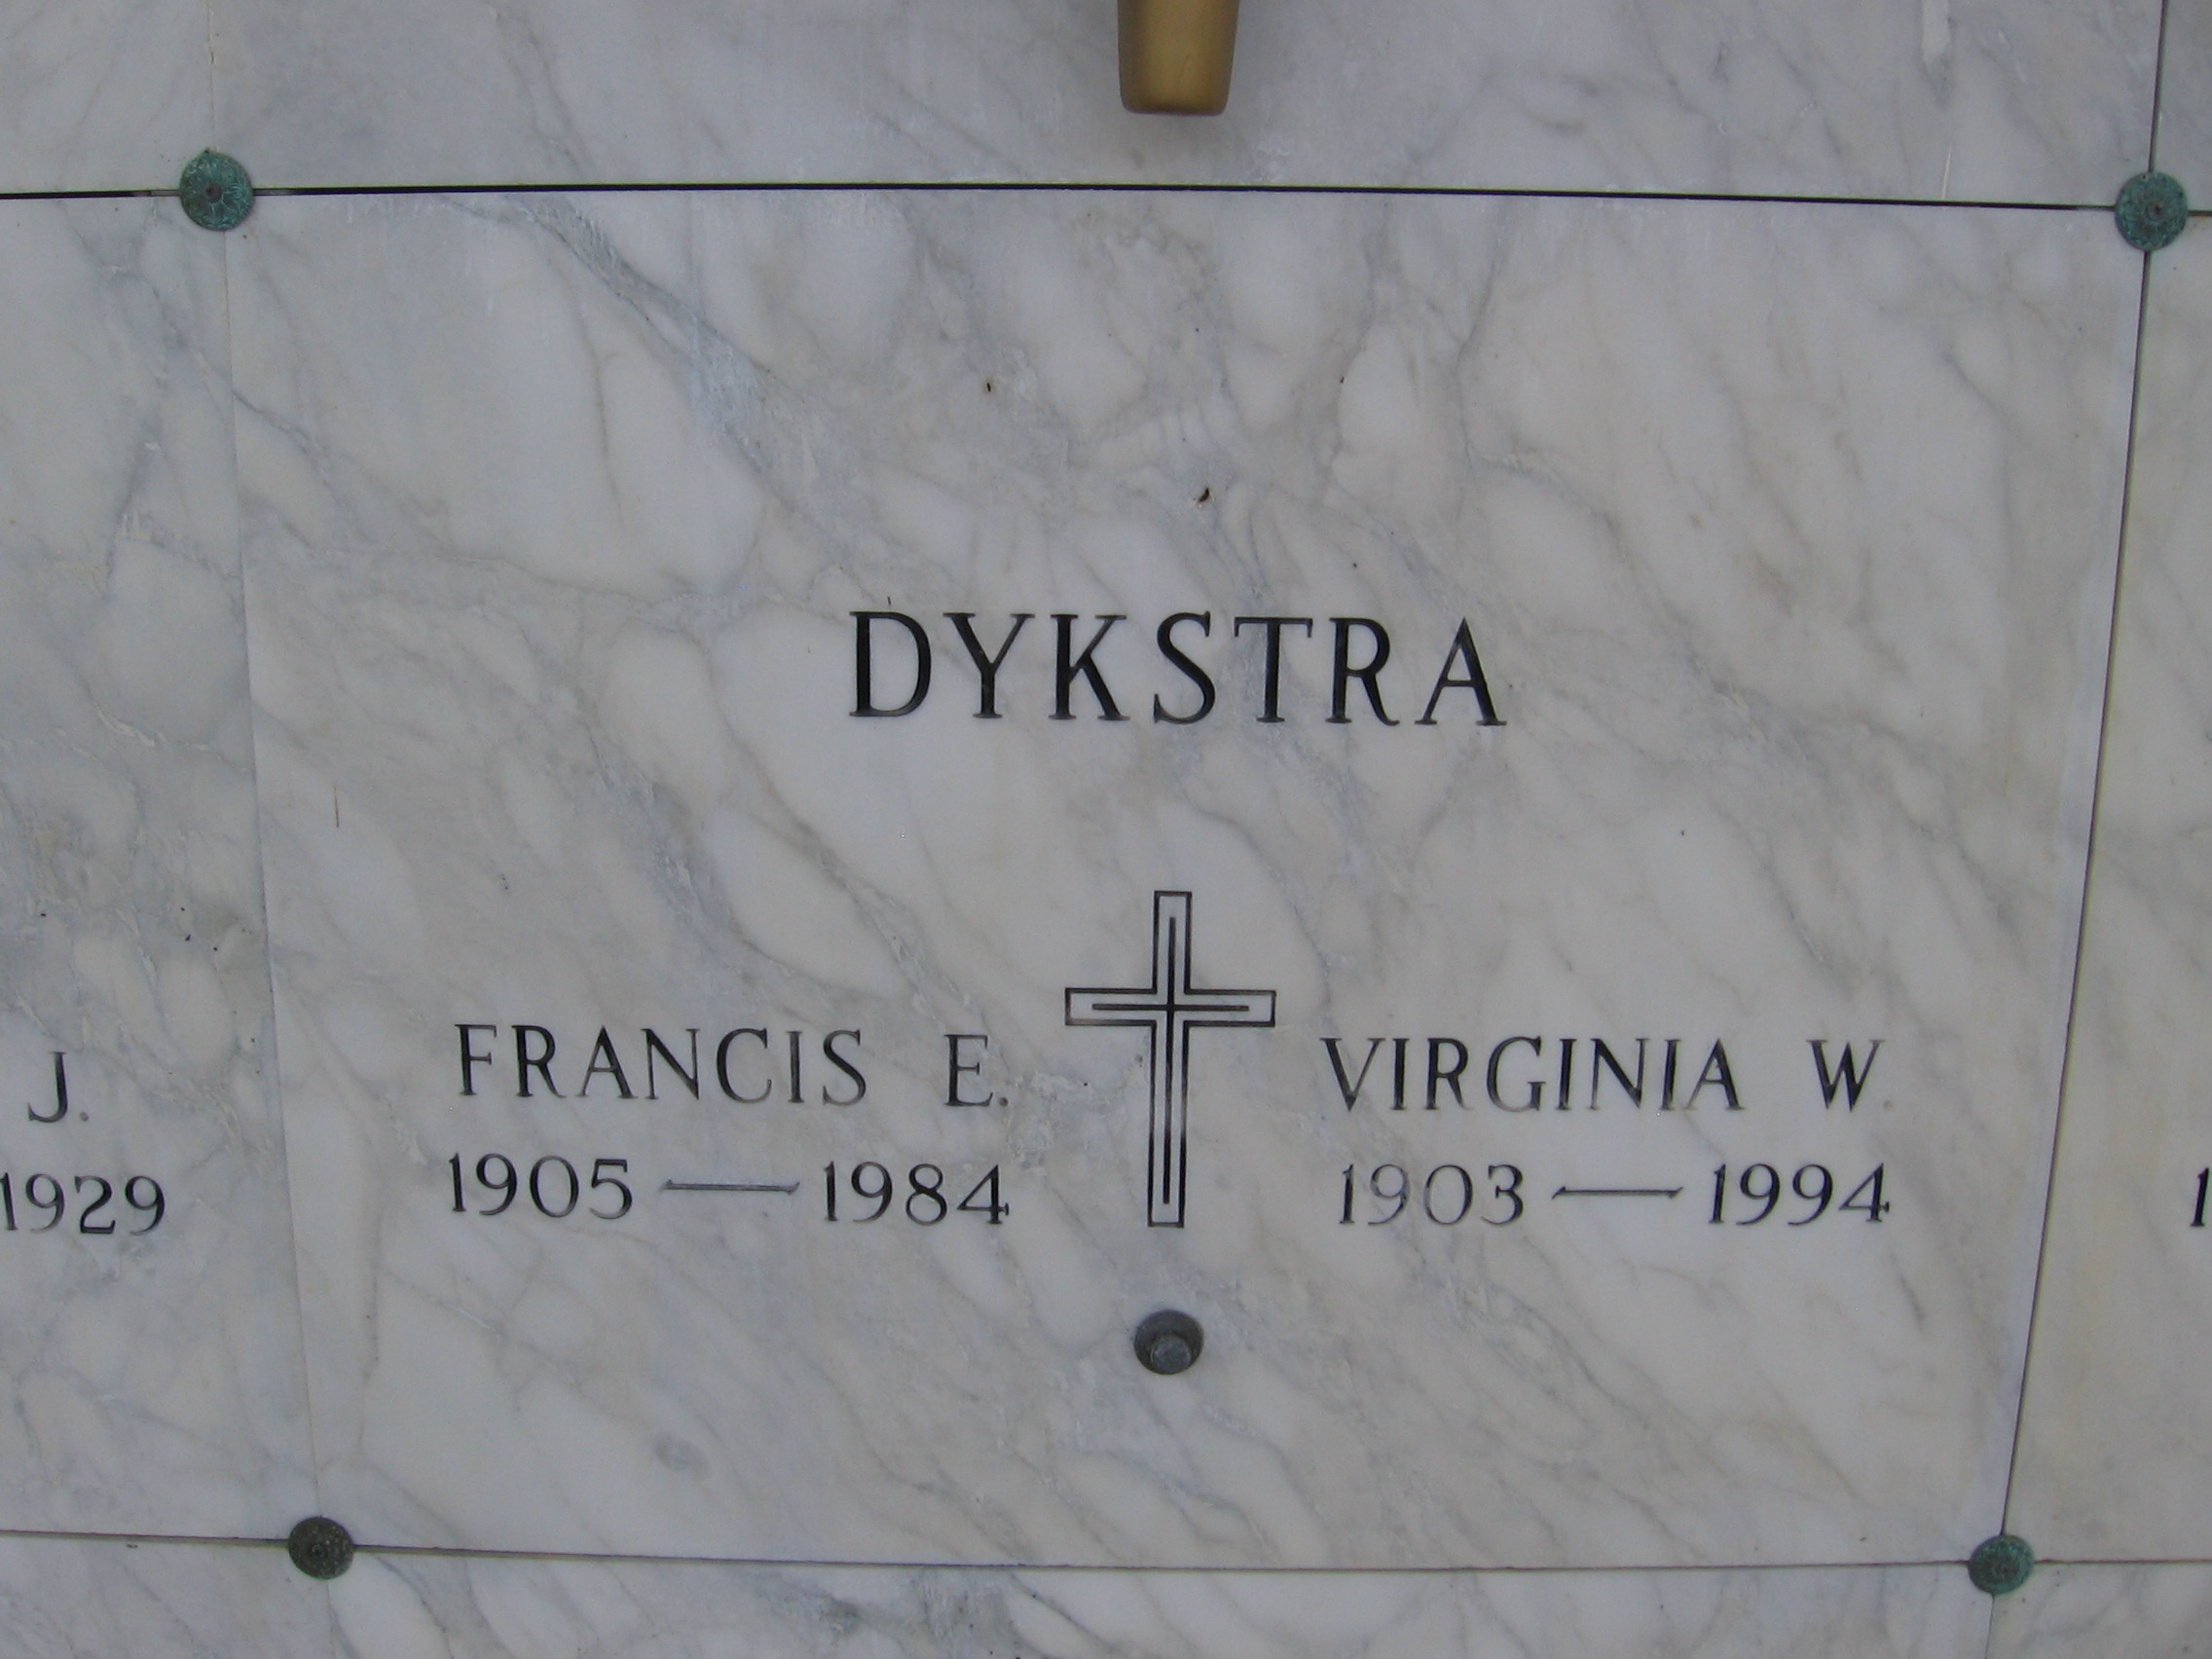 Francis E Dykstra